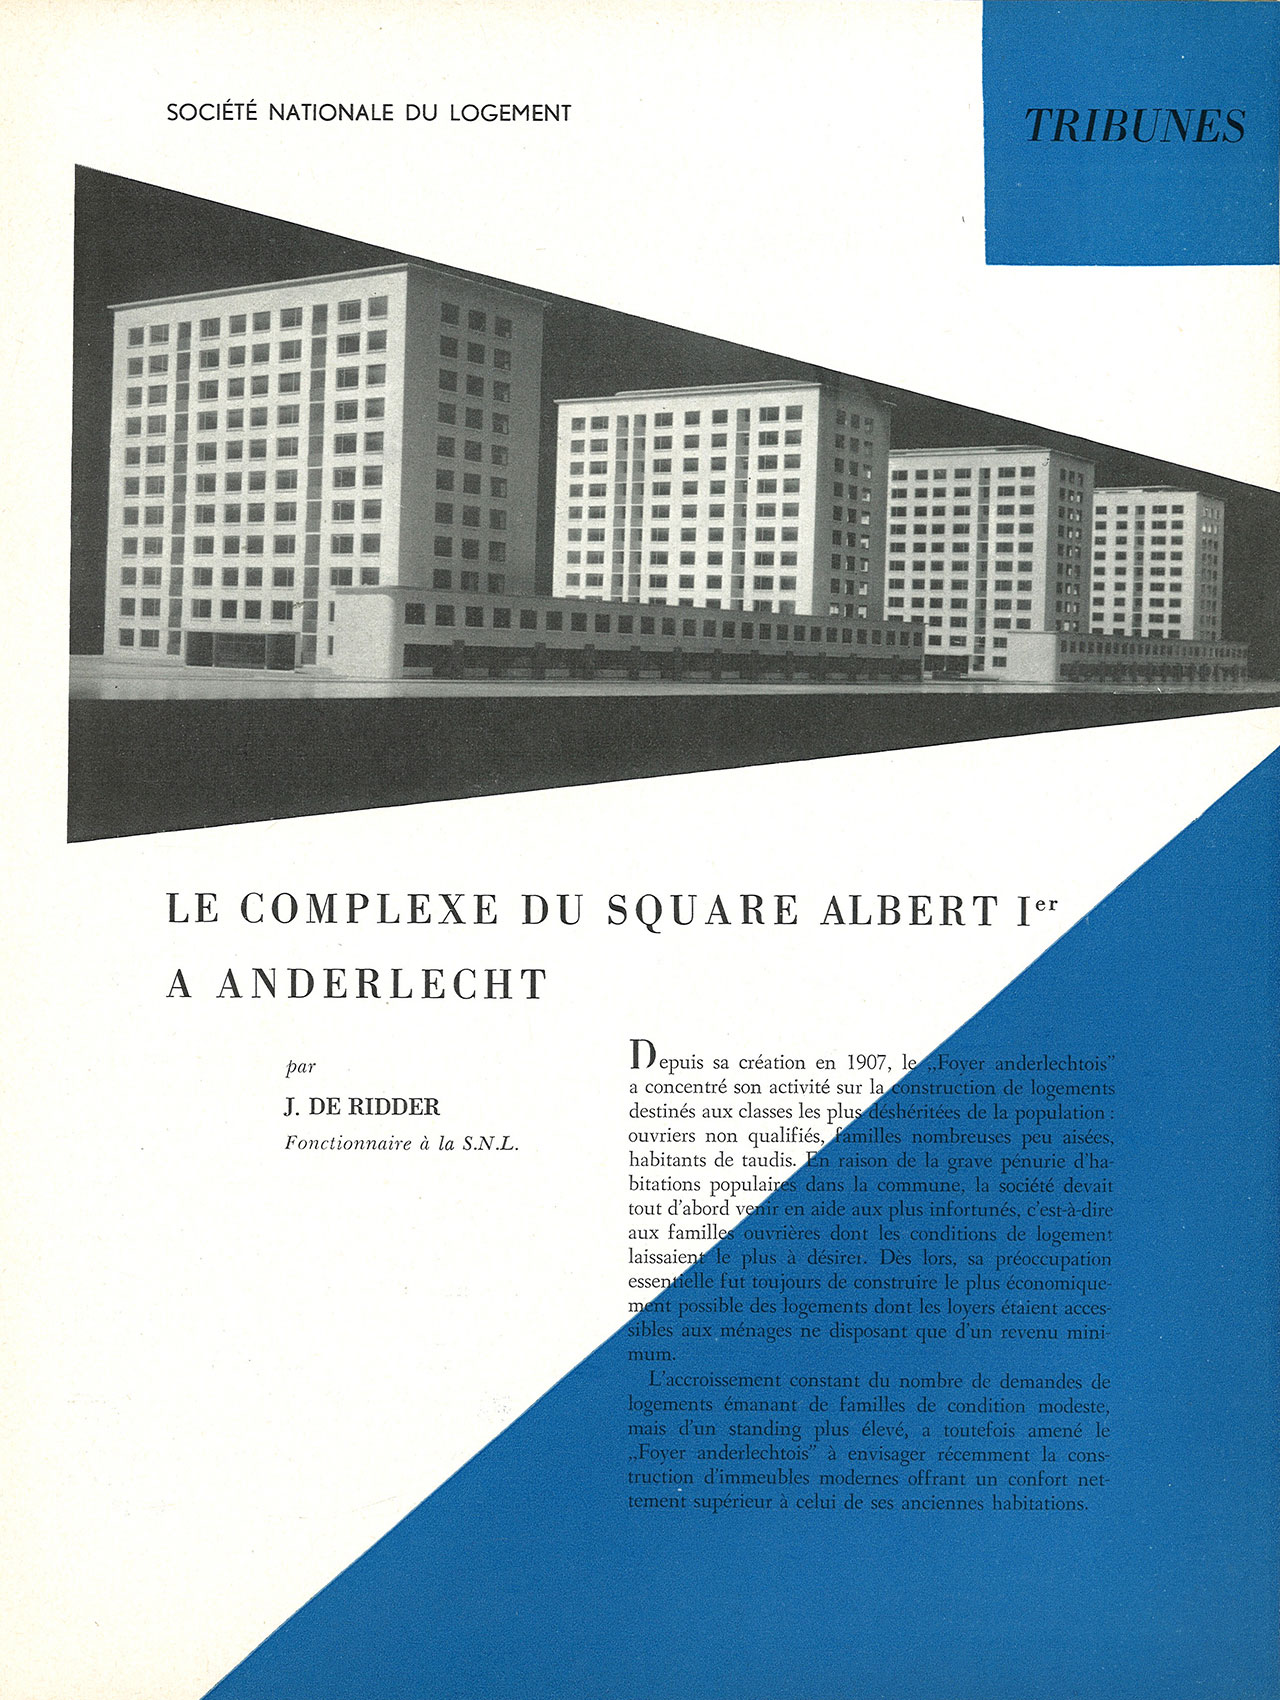 Le complexe du square Albert Ier à Anderlecht